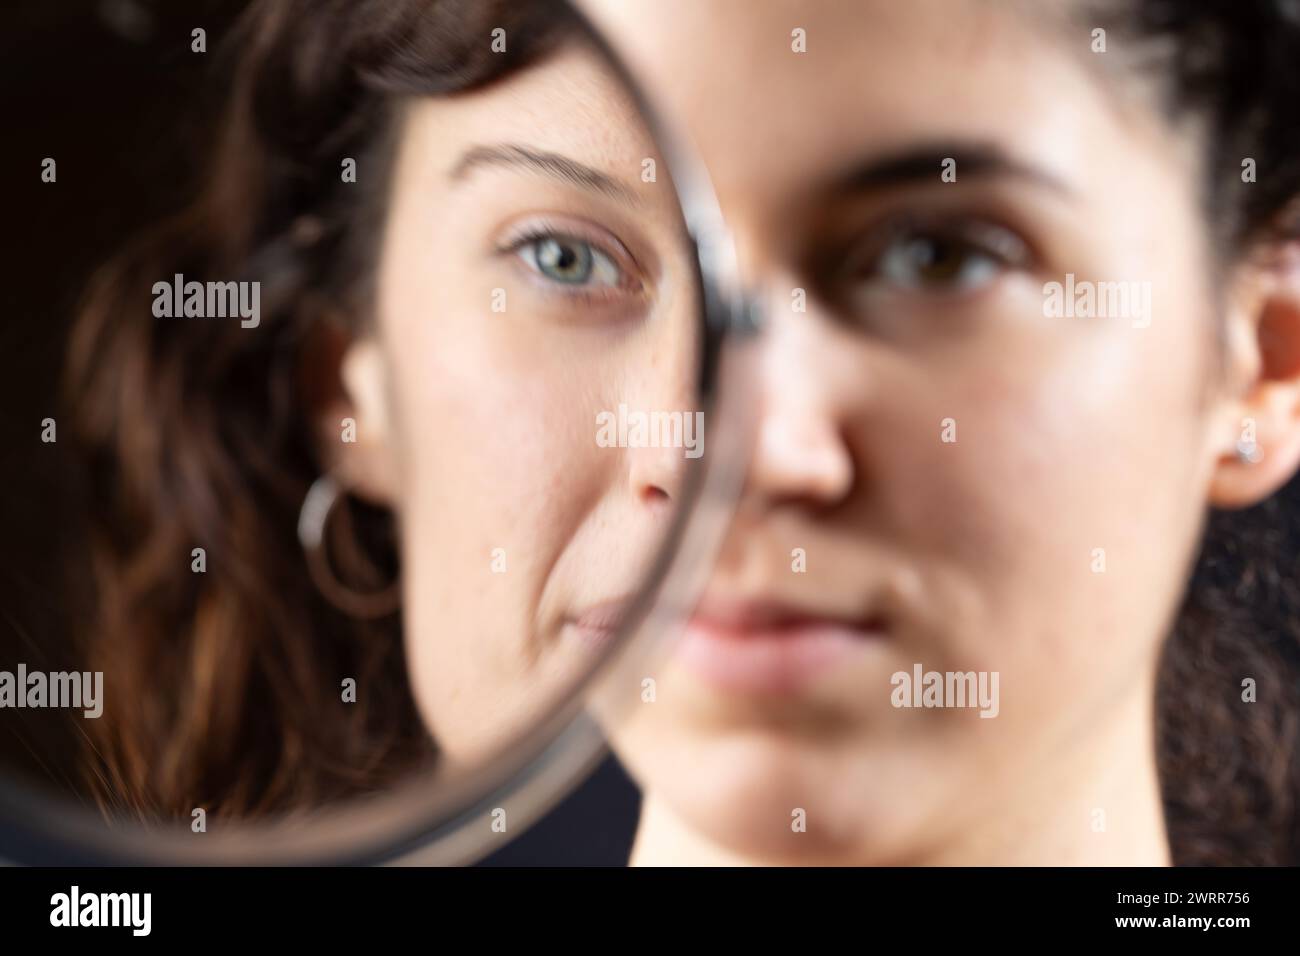 Künstlerische Darstellung des Gesichts einer Frau, halb im Spiegel gesehen Stockfoto